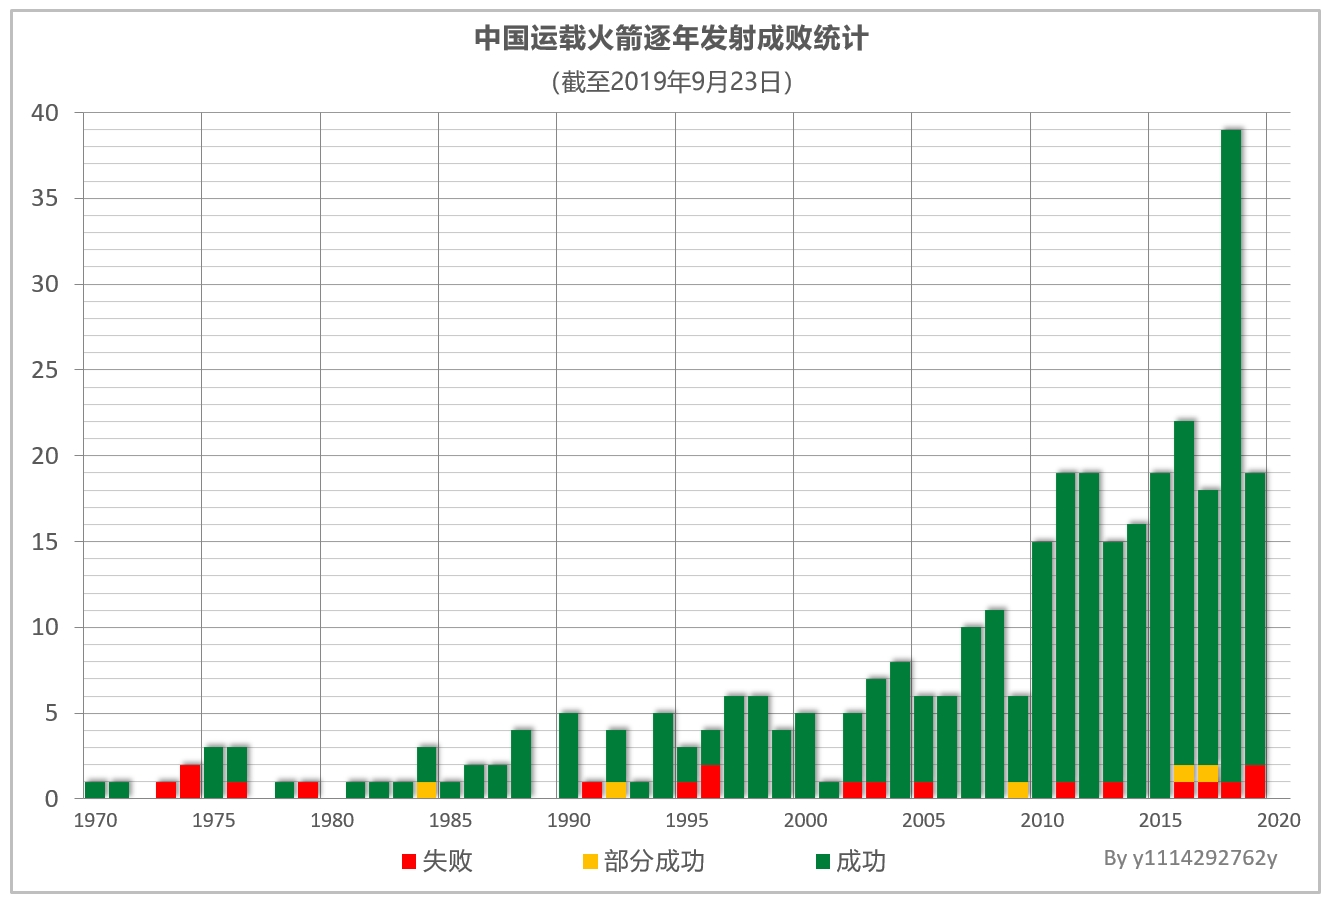 中國運載火箭逐年發射成敗統計圖表